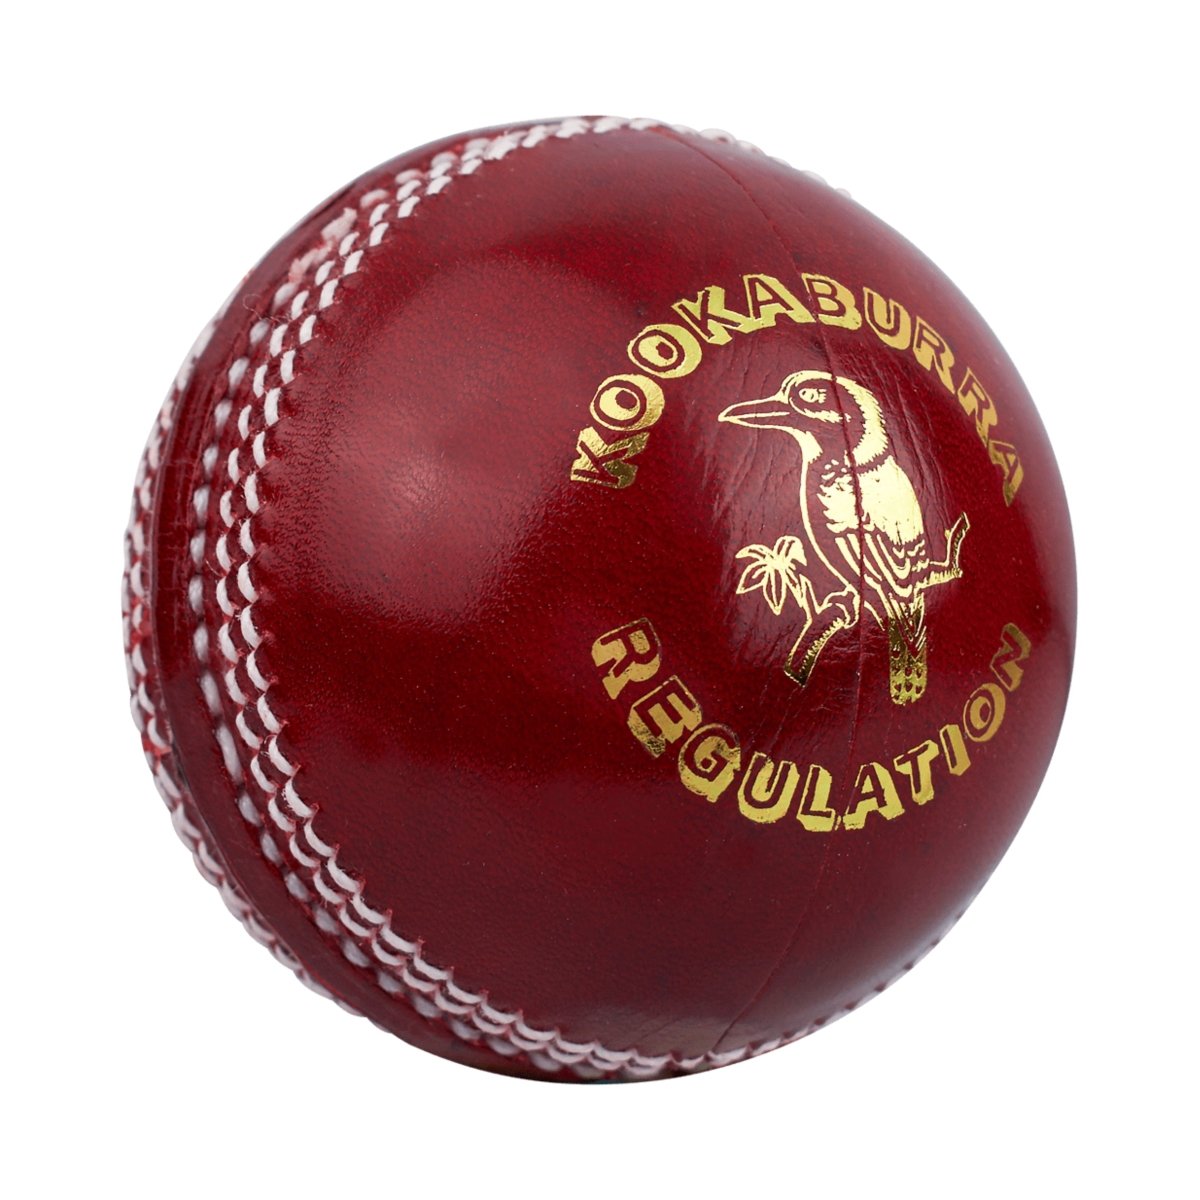 Kookaburra Regulation Cricket Ball.